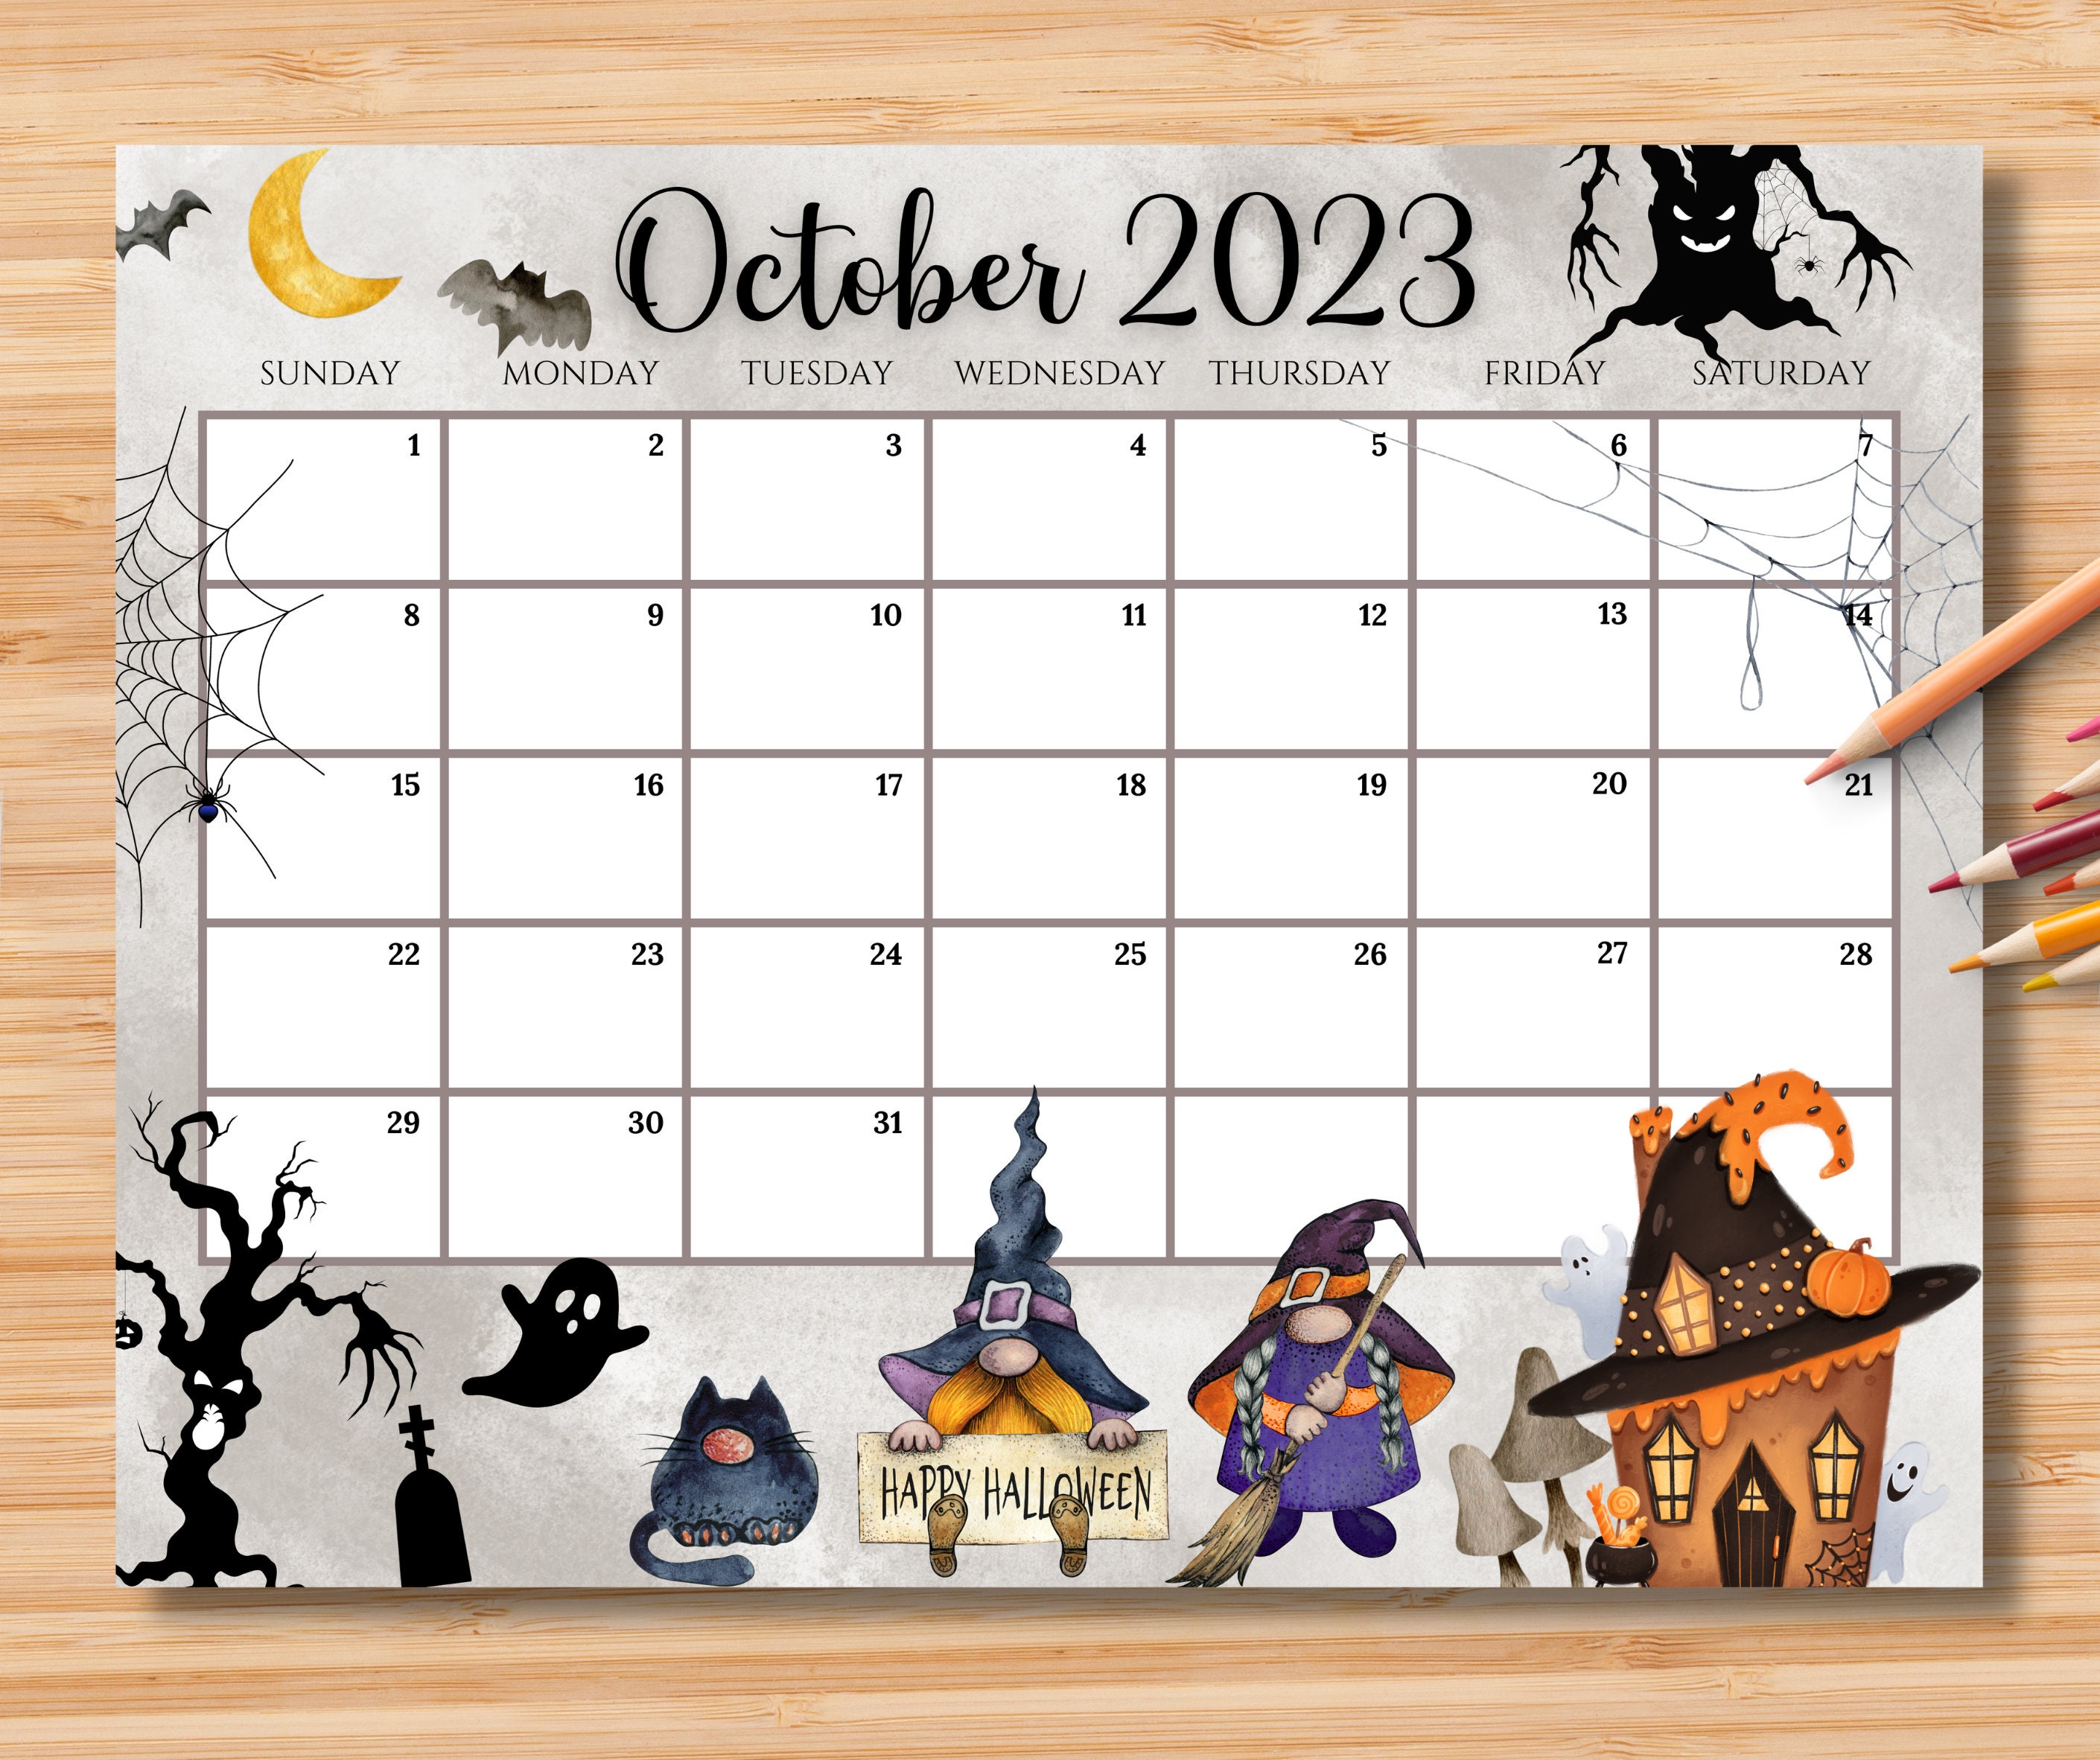 October 2023 Calendar For Kids Get Calendar 2023 Update